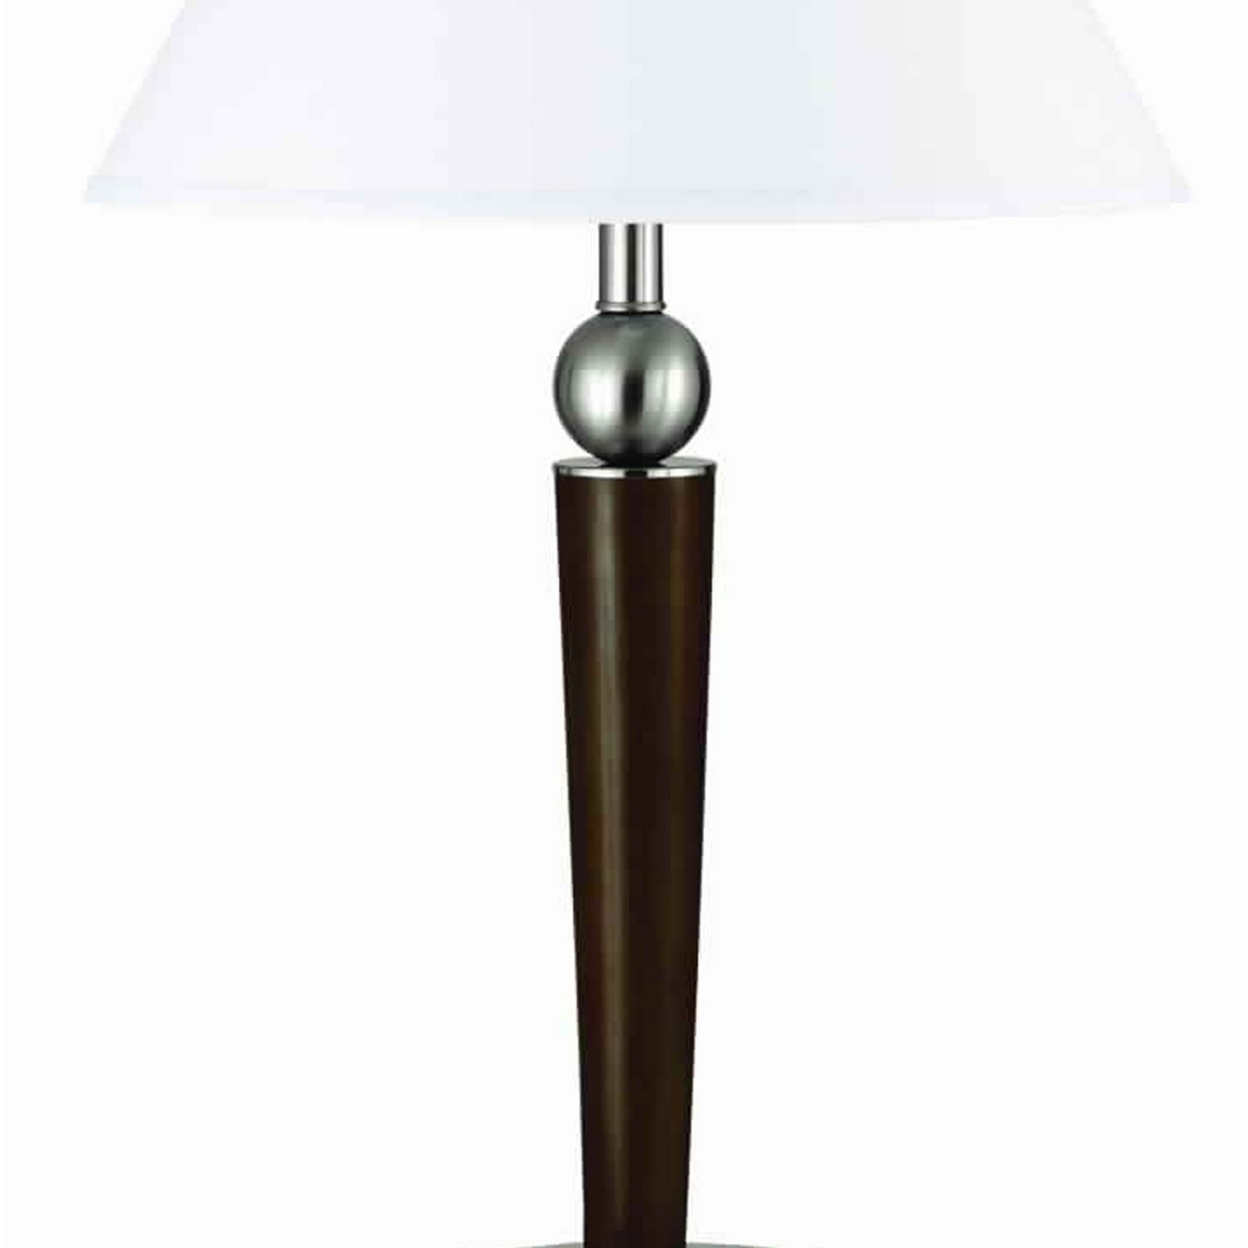 60 X 2 Watt Metal Frame Night Stand Lamp With Fabric Shade, White And Brown- Saltoro Sherpi